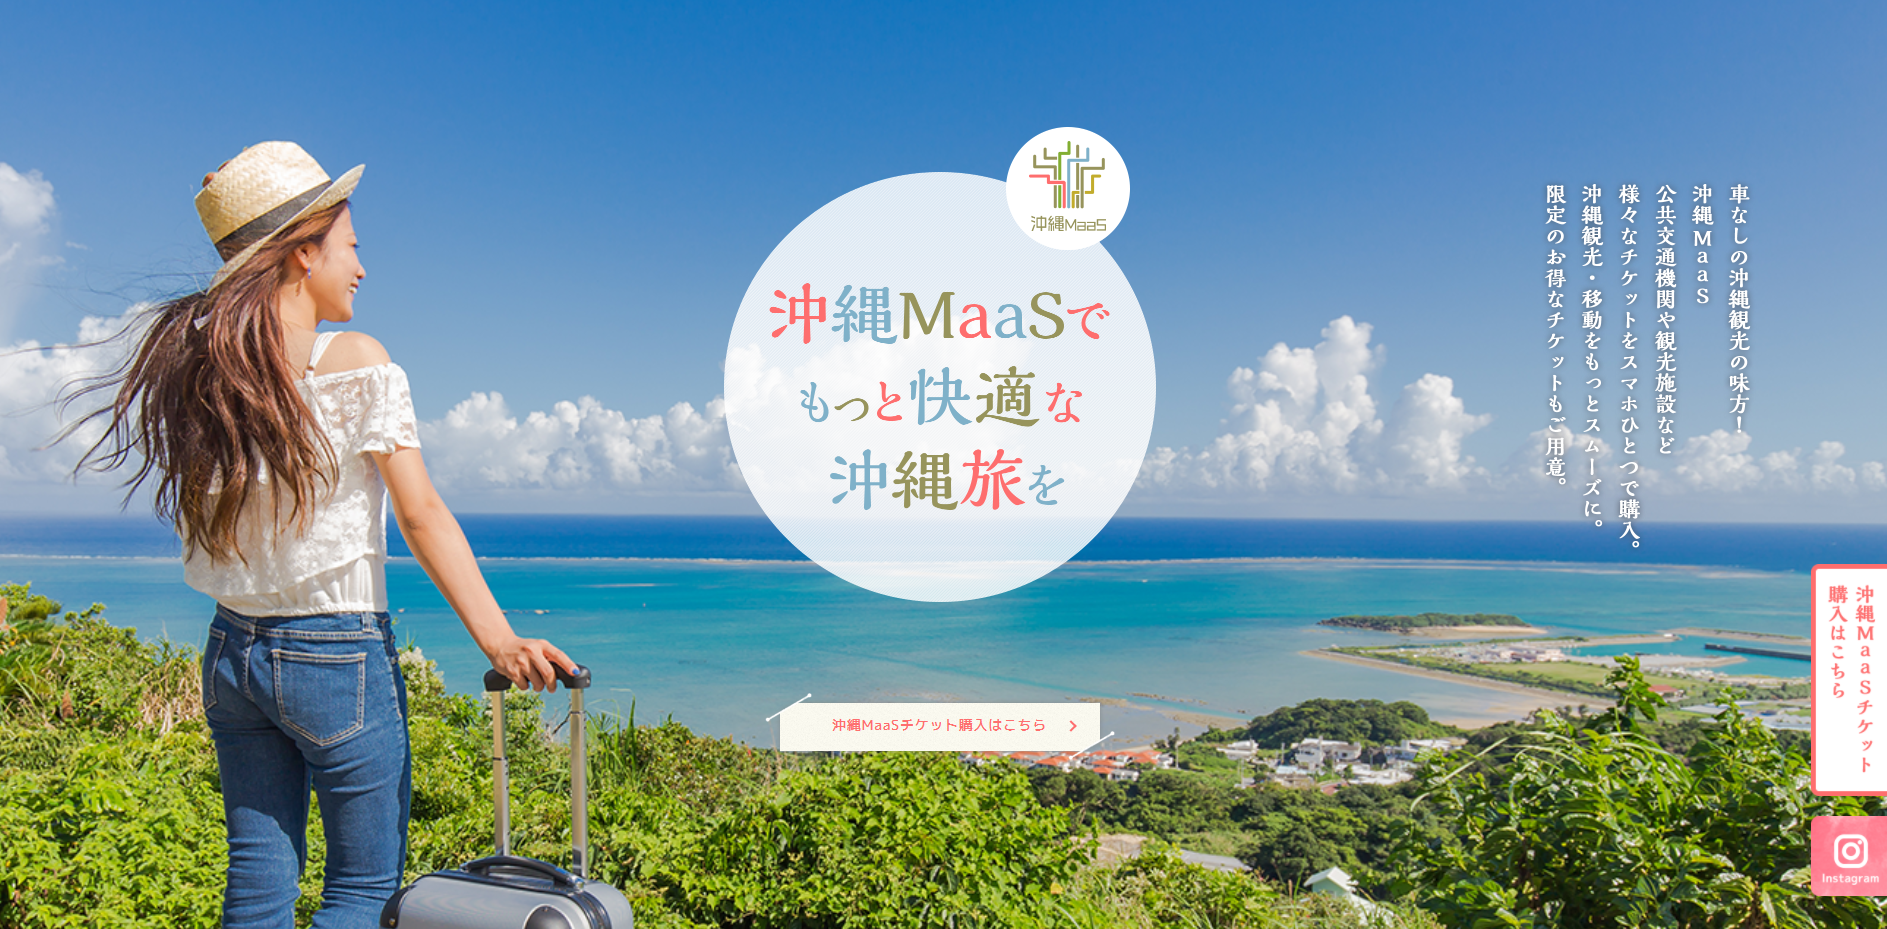 沖縄MaaS実証事業プロモーション